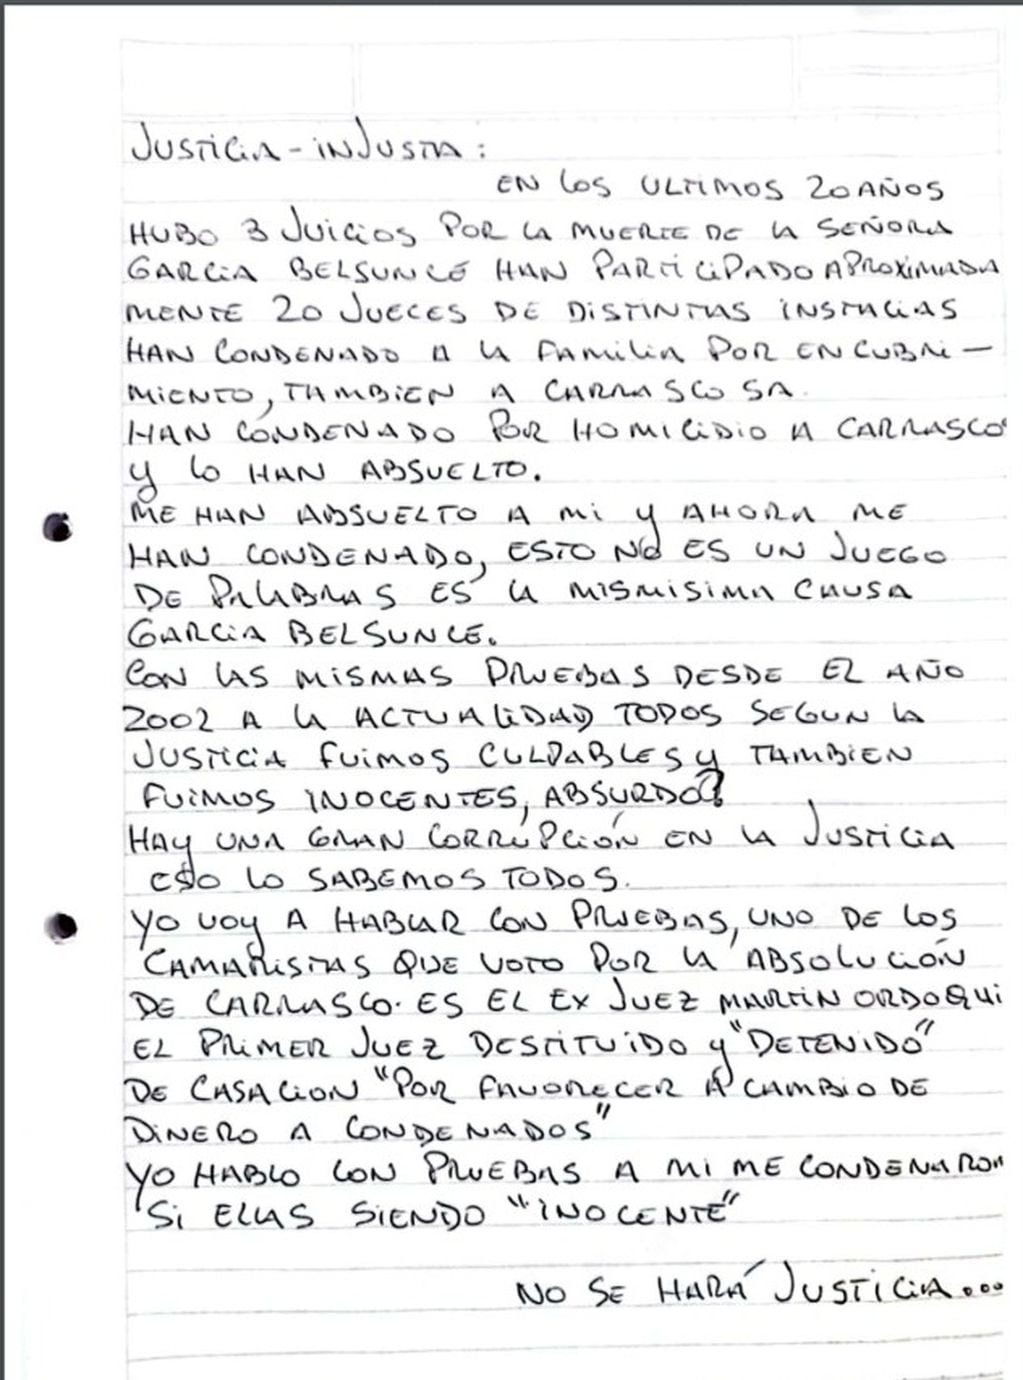 La segunda parte de la carta de Nicolás Pachelo dirigida a la "Justicia Injusta". (Foto: Twitter)